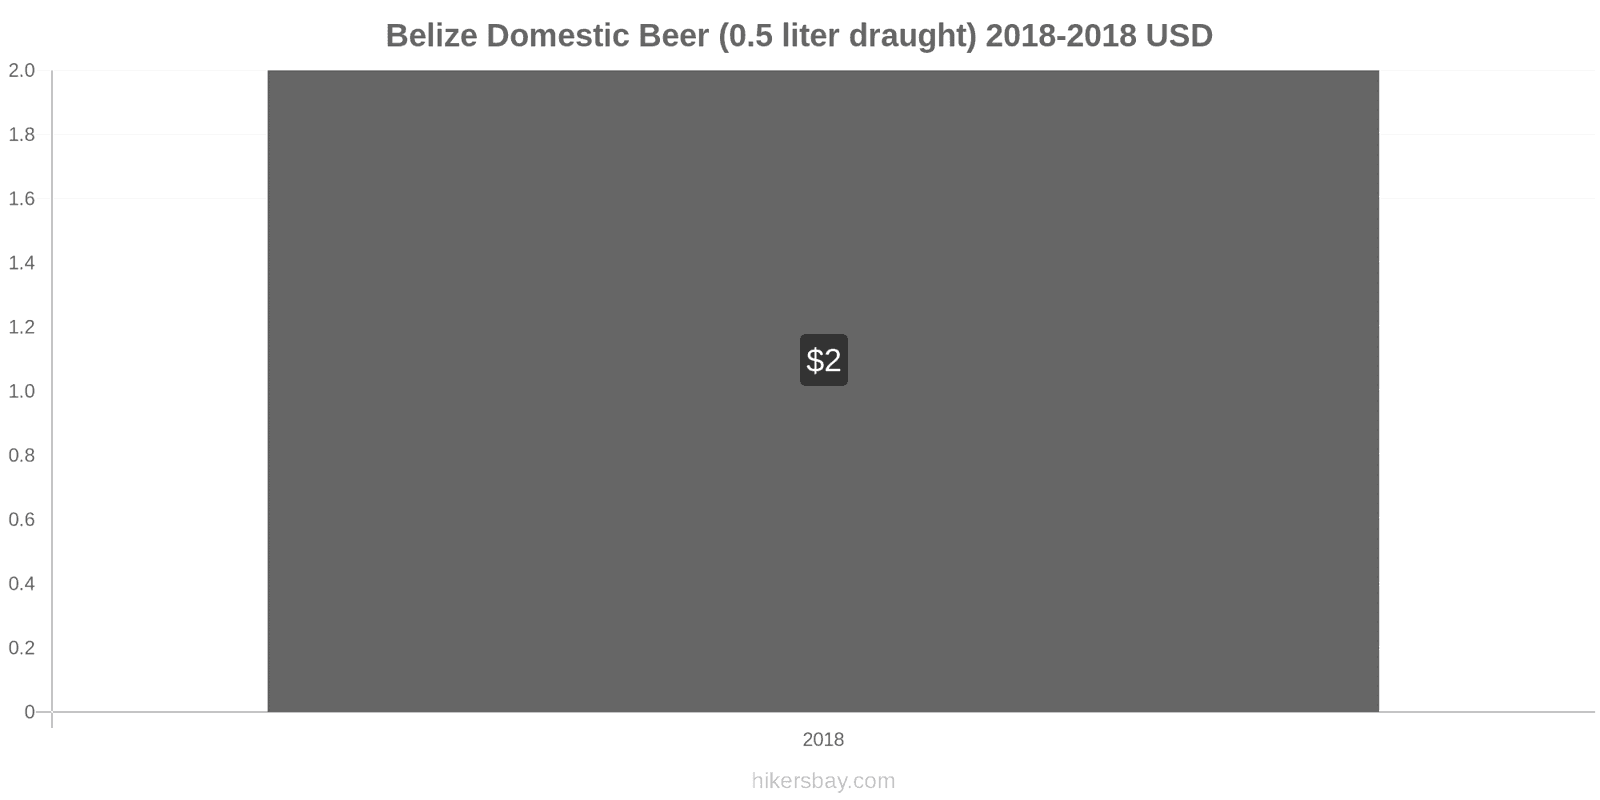 Belize price changes Domestic Beer (0.5 liter draught) hikersbay.com